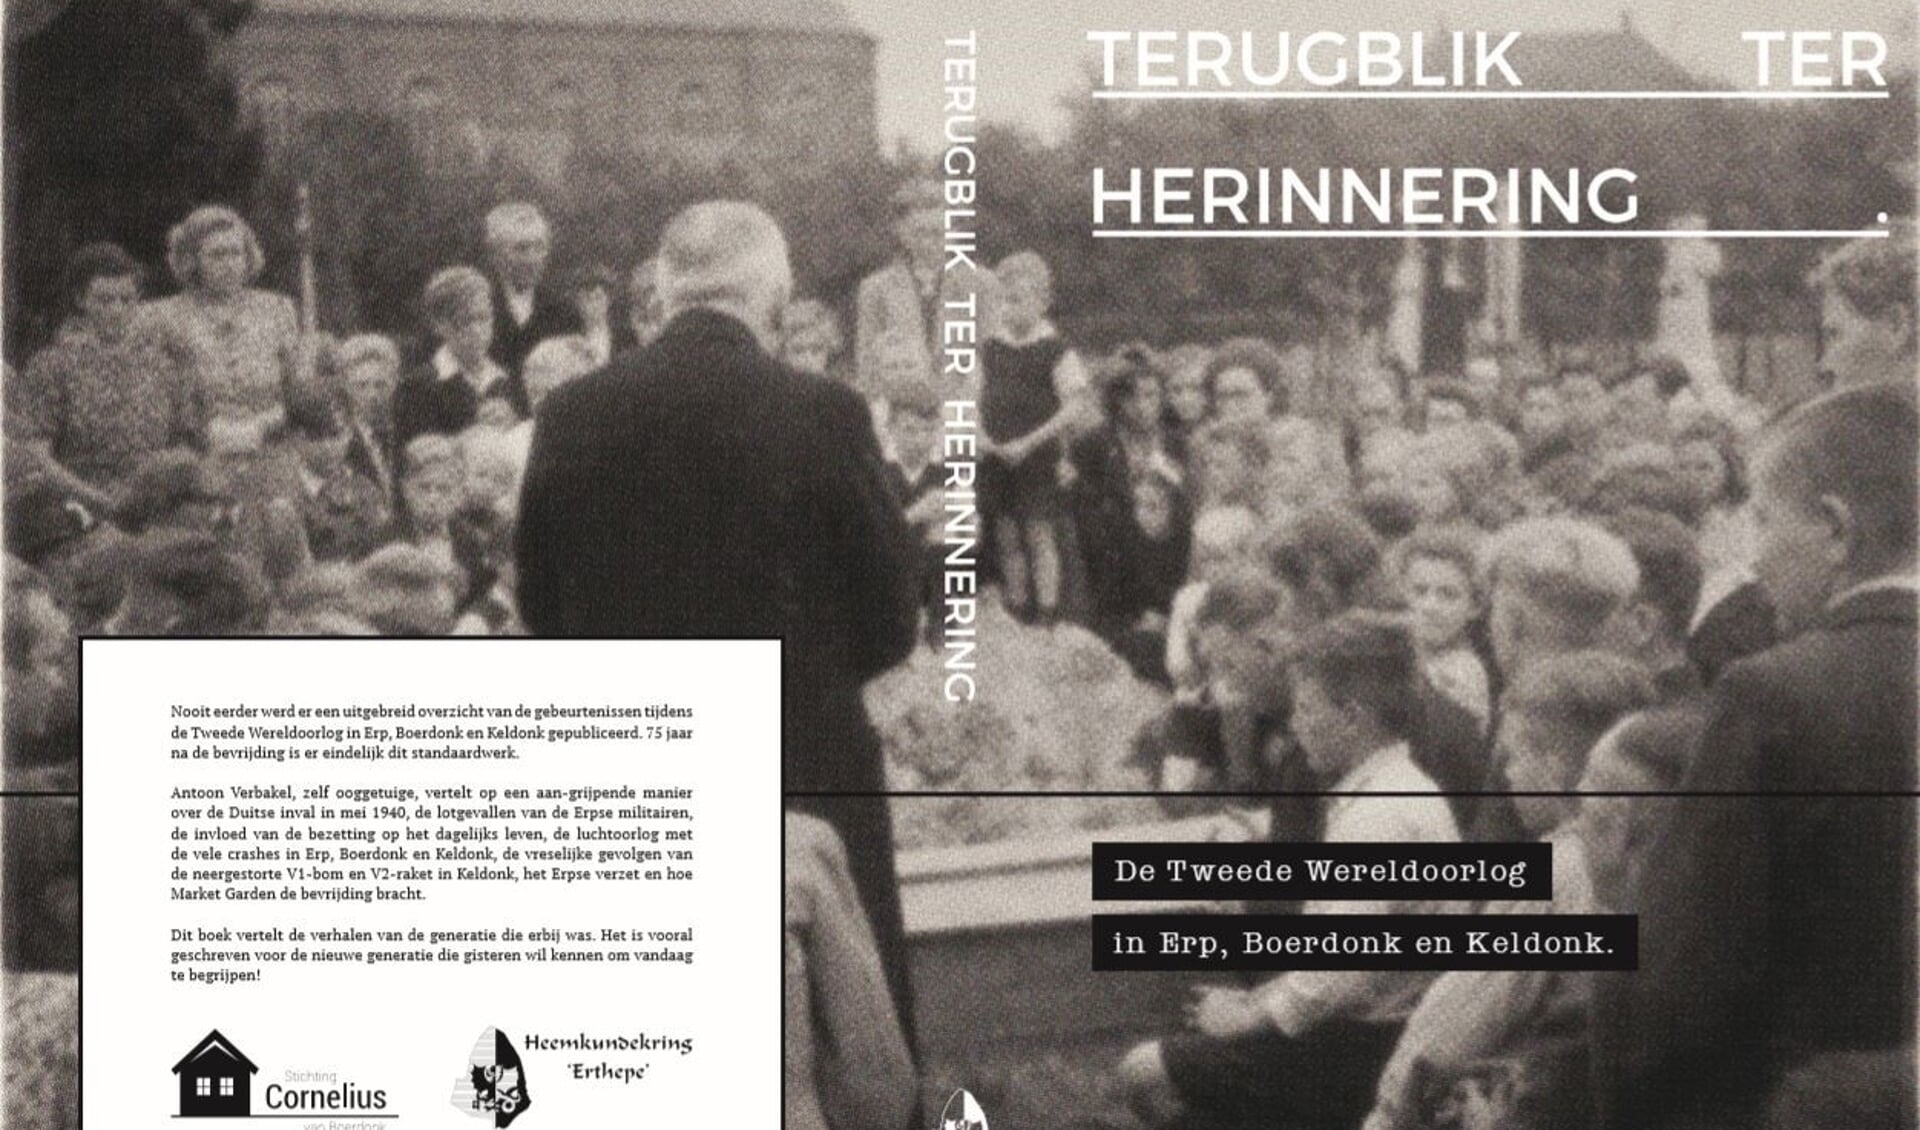 Het boek Terugblik ter herinnering vertelt over de Tweede Wereldoorlog in Erp, Boerdonk en Keldonk. 